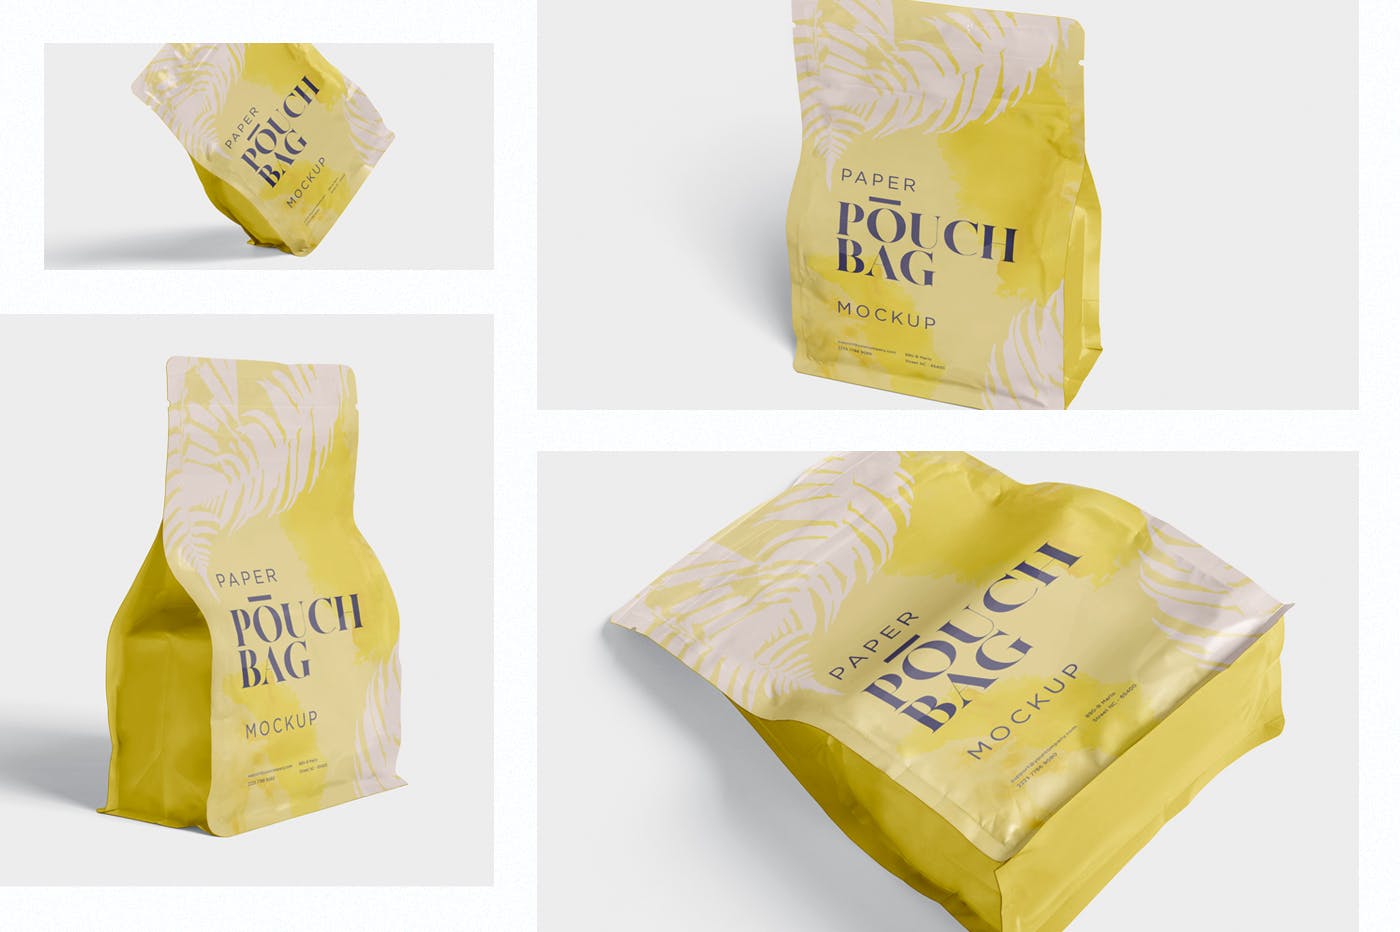 零食包装纸袋/塑料袋设计效果图样机 Paper Pouch Bag Mockup插图(1)